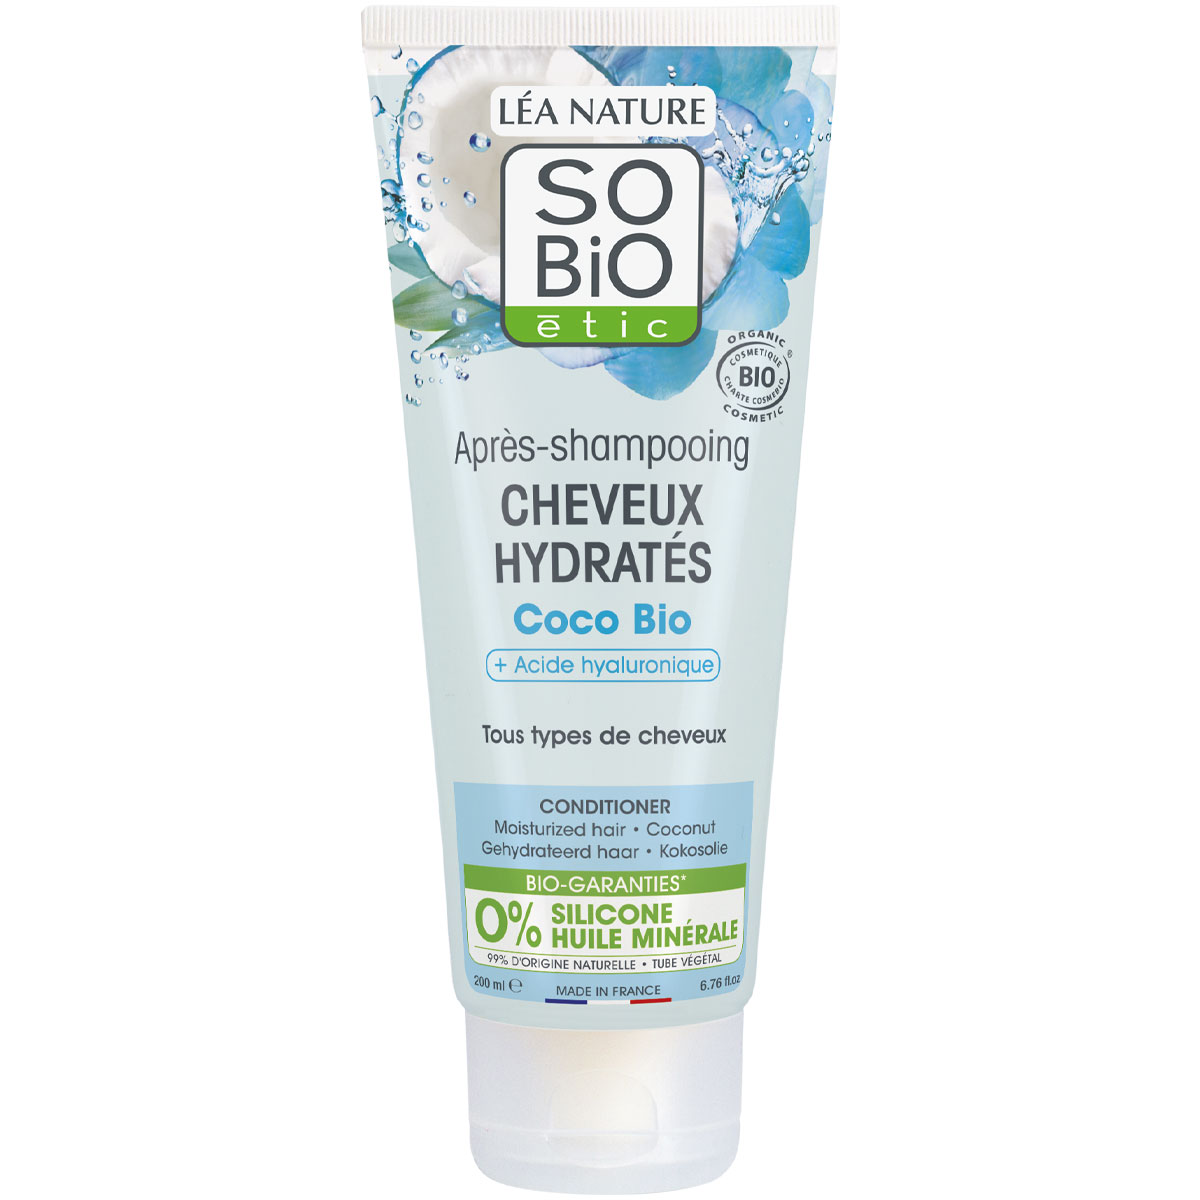 Après-shampoing hydratant bio - Acide hyaluronique & coco - Tous types de cheveux - 200 ml